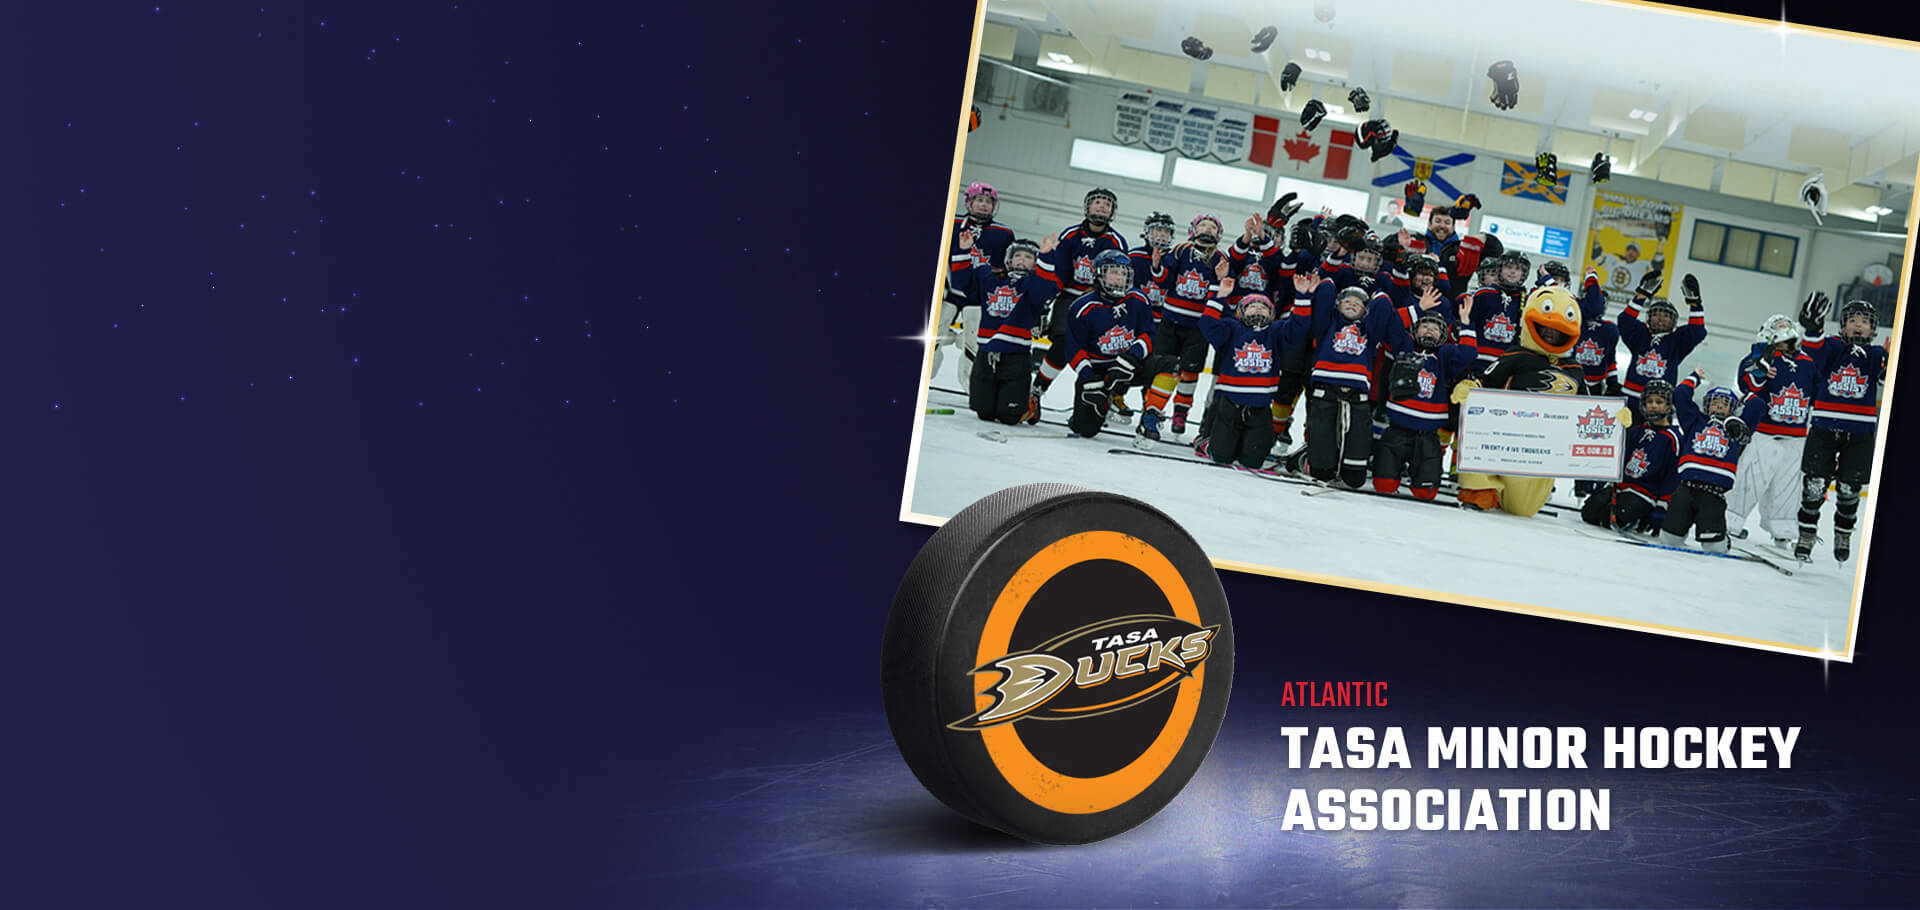 TASA Minor Hockey League Association